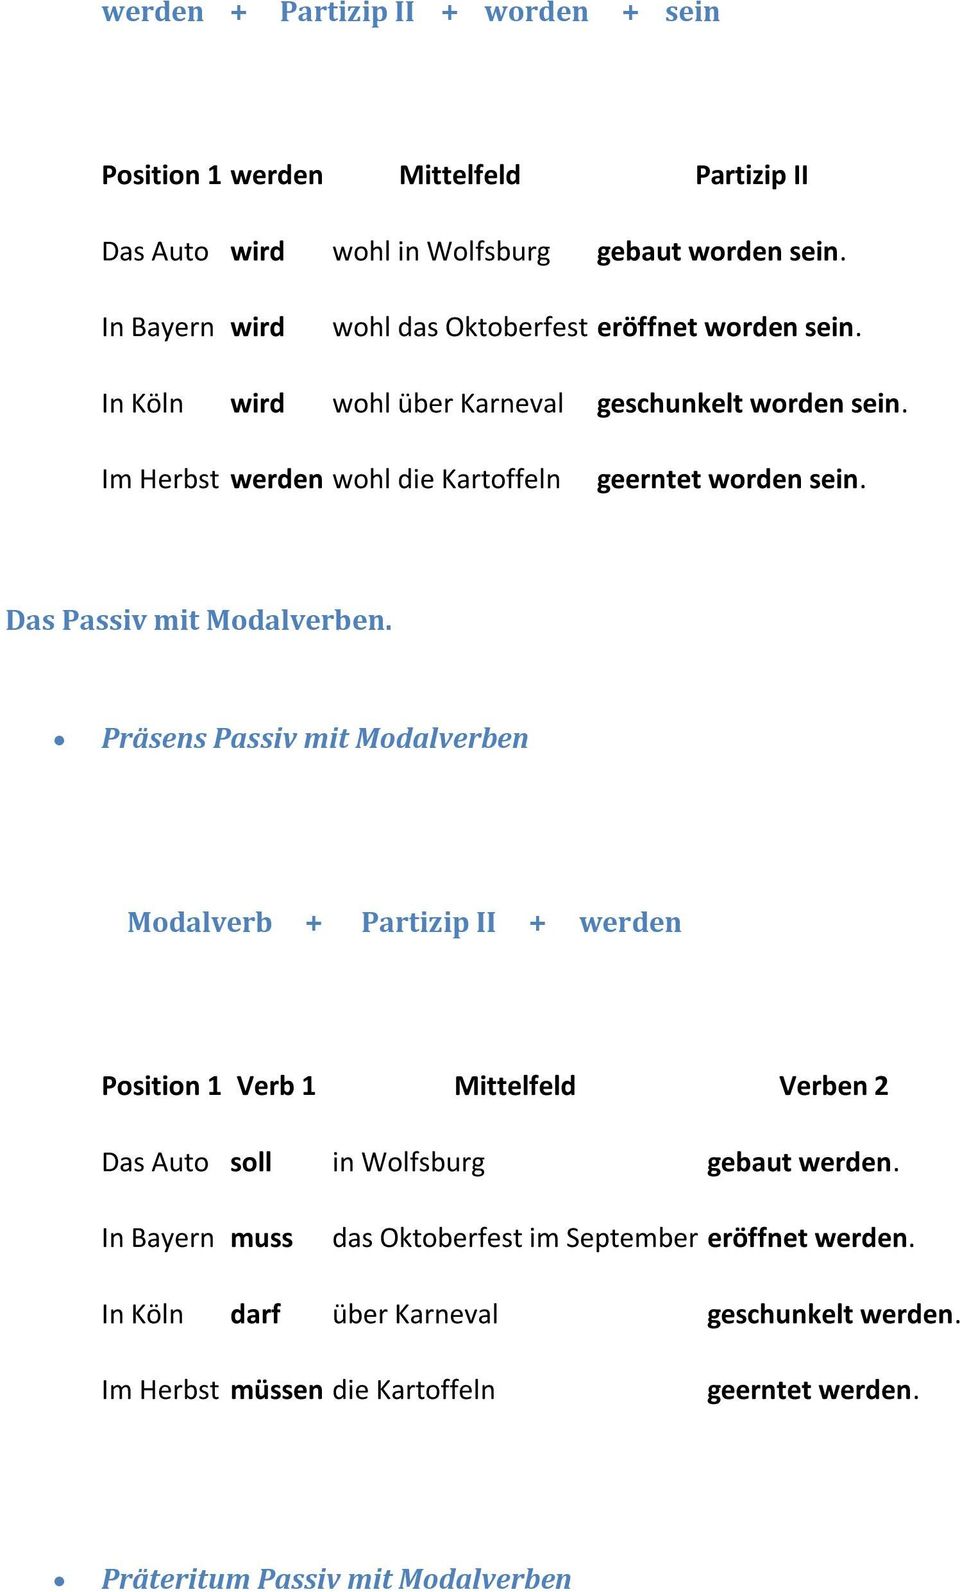 Präsens Passiv mit Mdalverben Mdalverb + Partizip II + werden Psitin 1 Verb 1 Mittelfeld Verben 2 Das Aut sll in Wlfsburg gebaut werden.